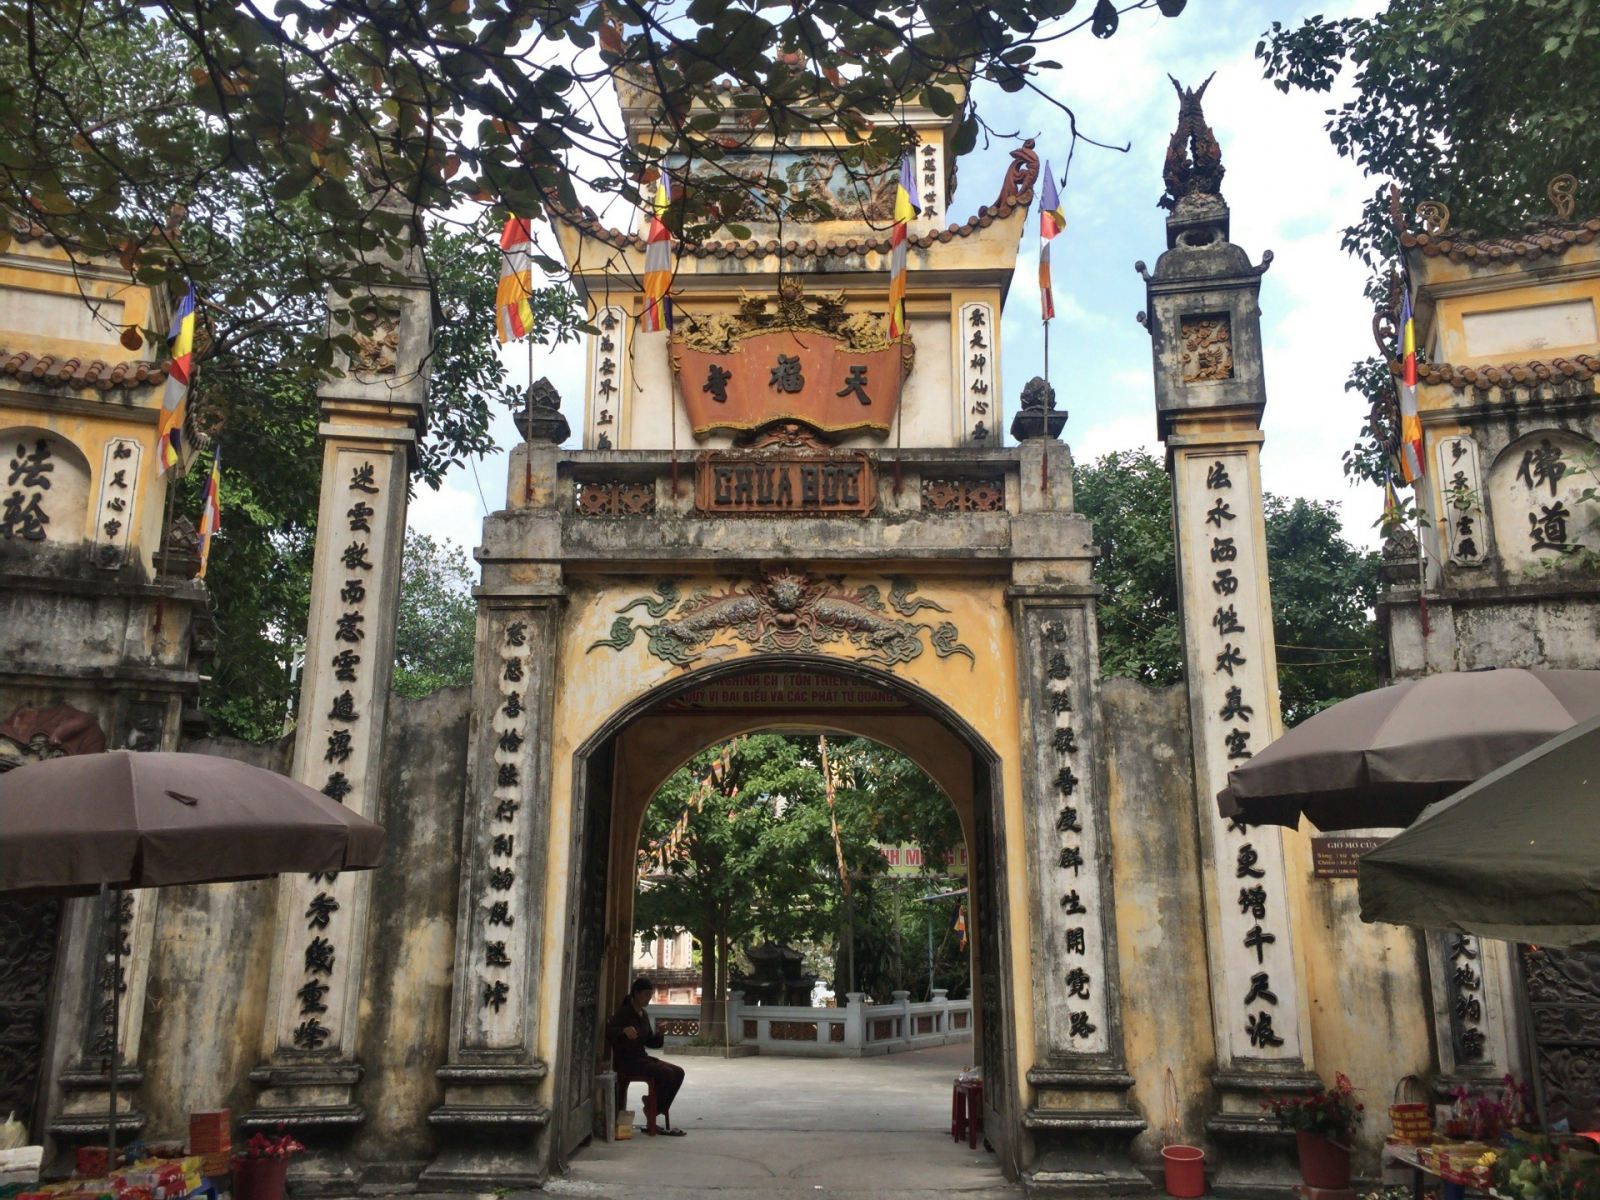 Về thăm chùa Bộc, nơi thờ "Hoàng đế" Quang Trung